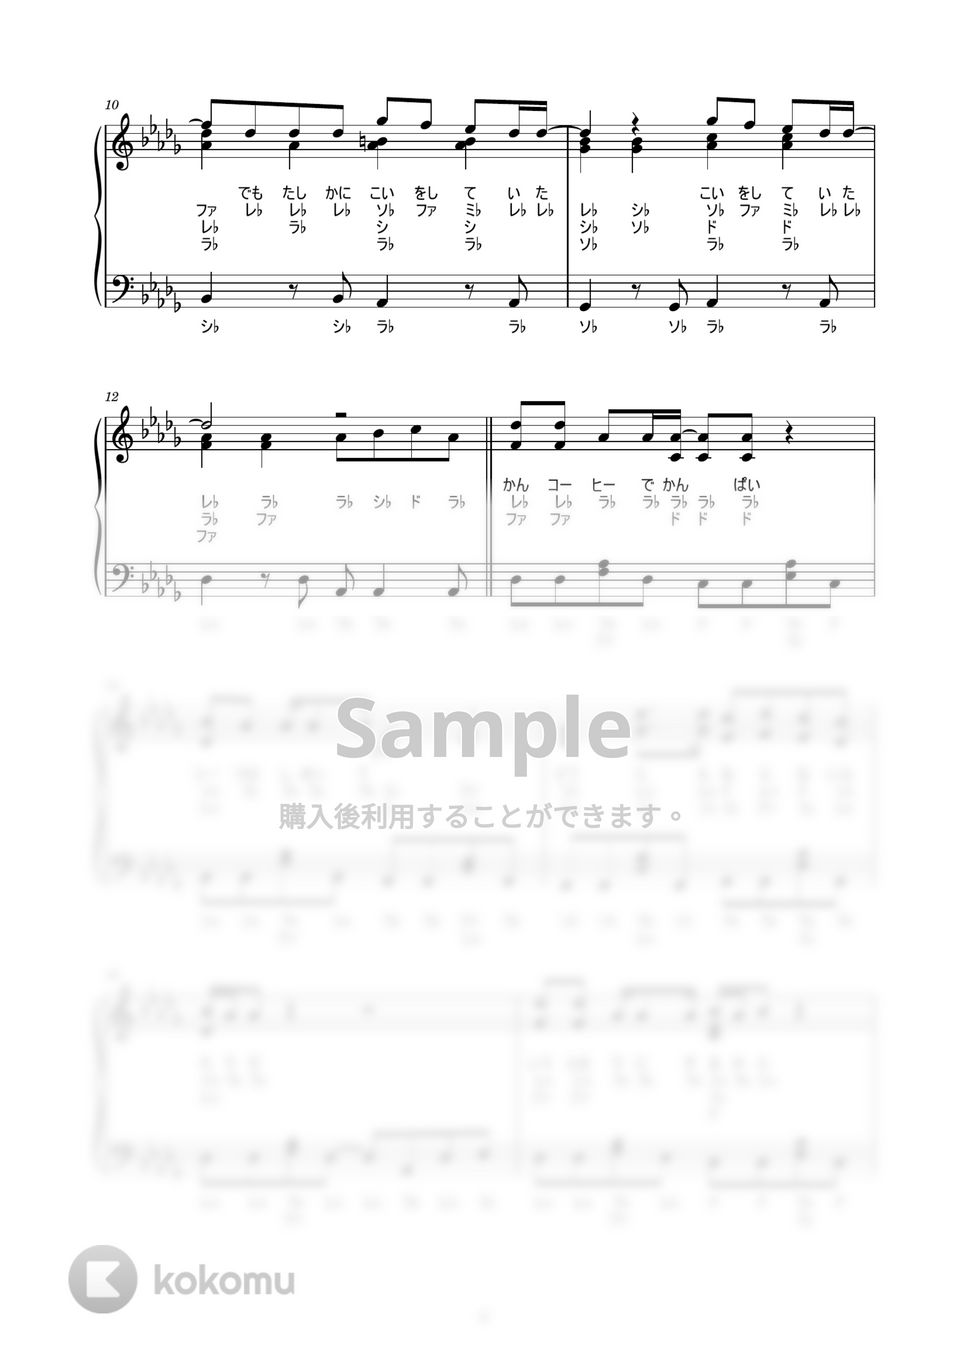 マカロニえんぴつ - 恋人ごっこ (歌詞付き / ドレミ付き / 中級者) by piano.tokyo